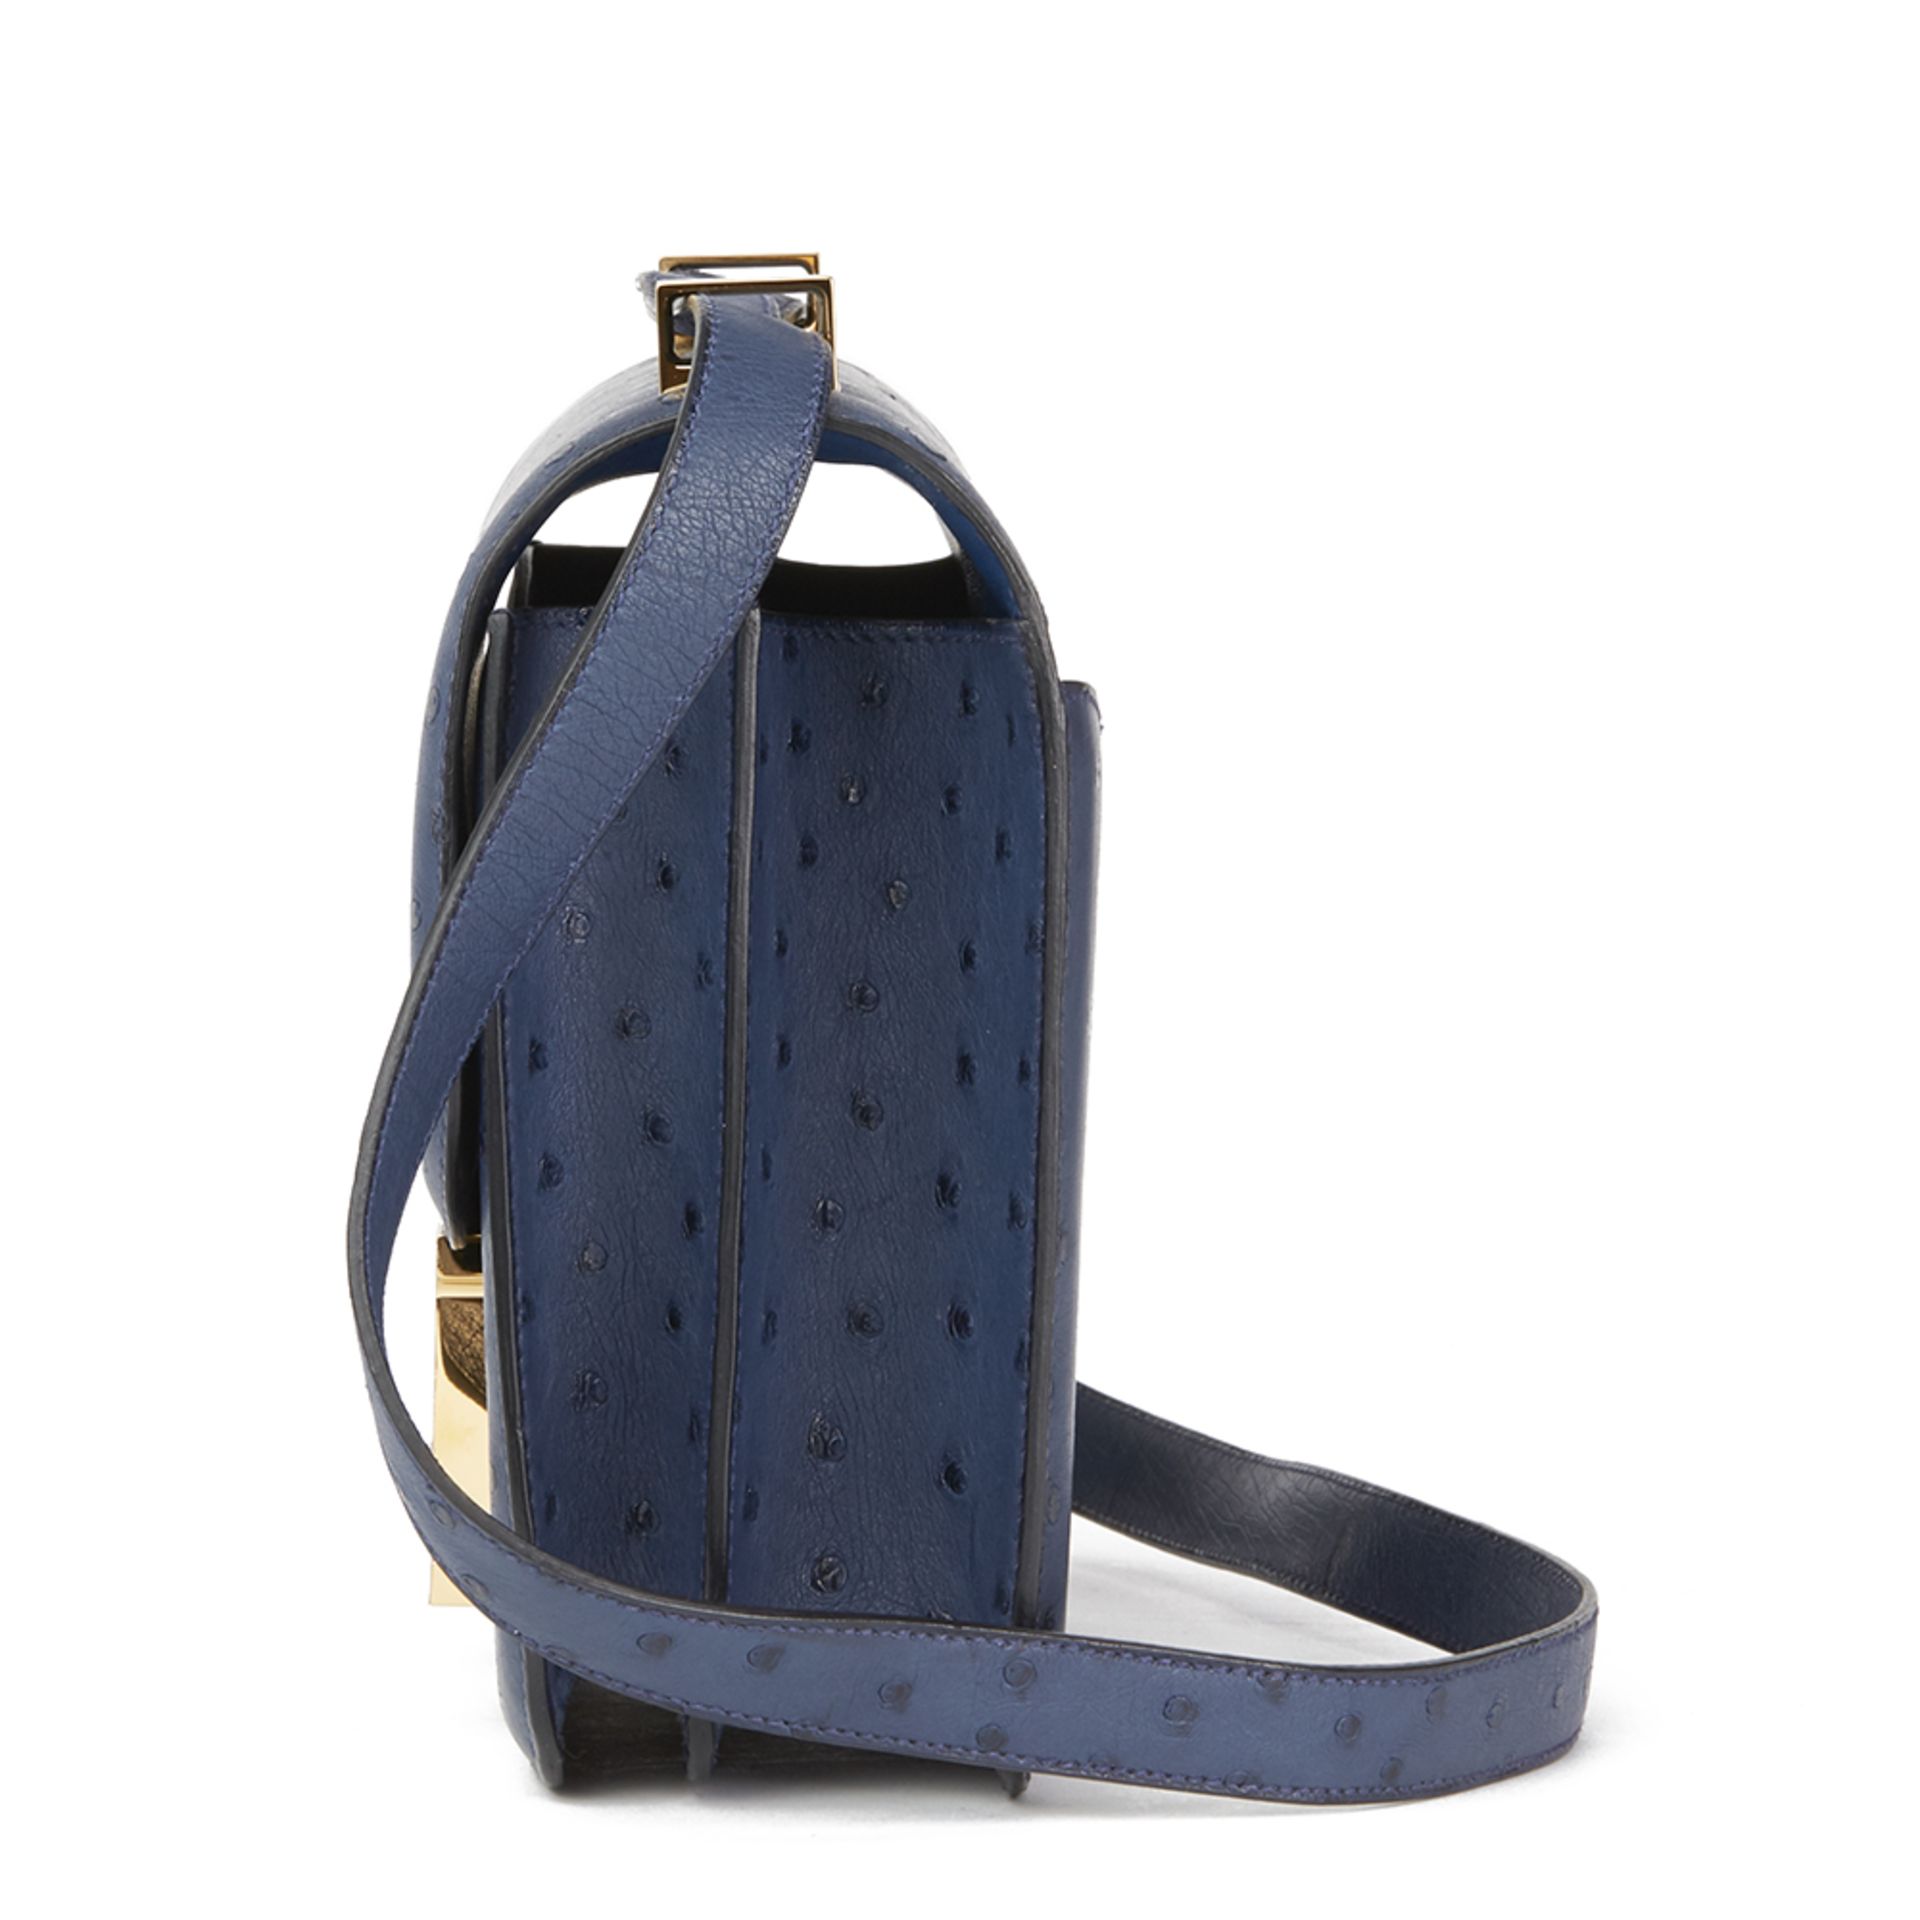 Hermès Bleu De Malte Ostrich Leather Special Order Constance 24 - Image 11 of 12